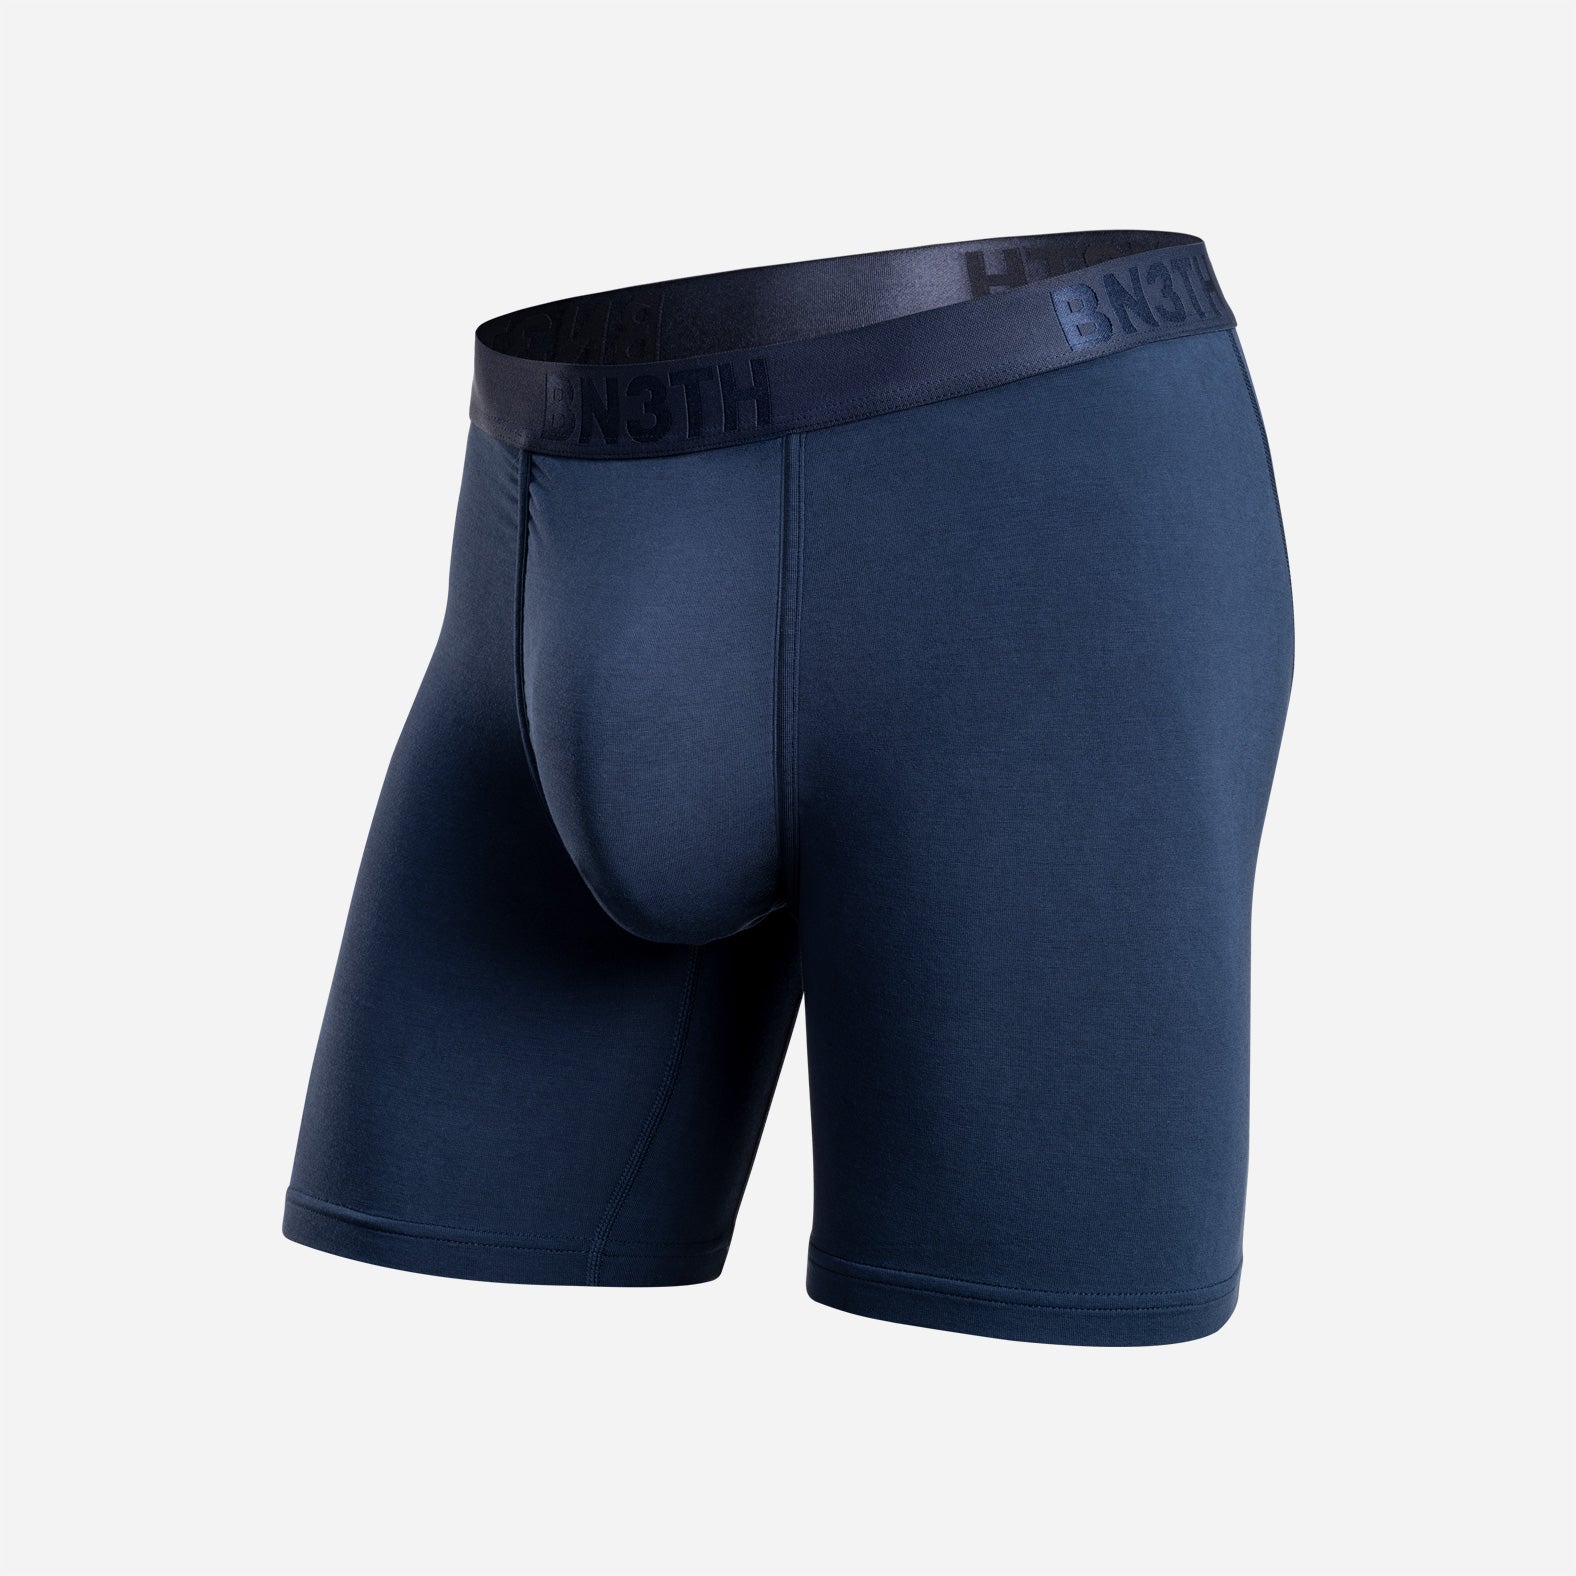 BN3TH Underwear – Classic Navy Brief: | Boxer